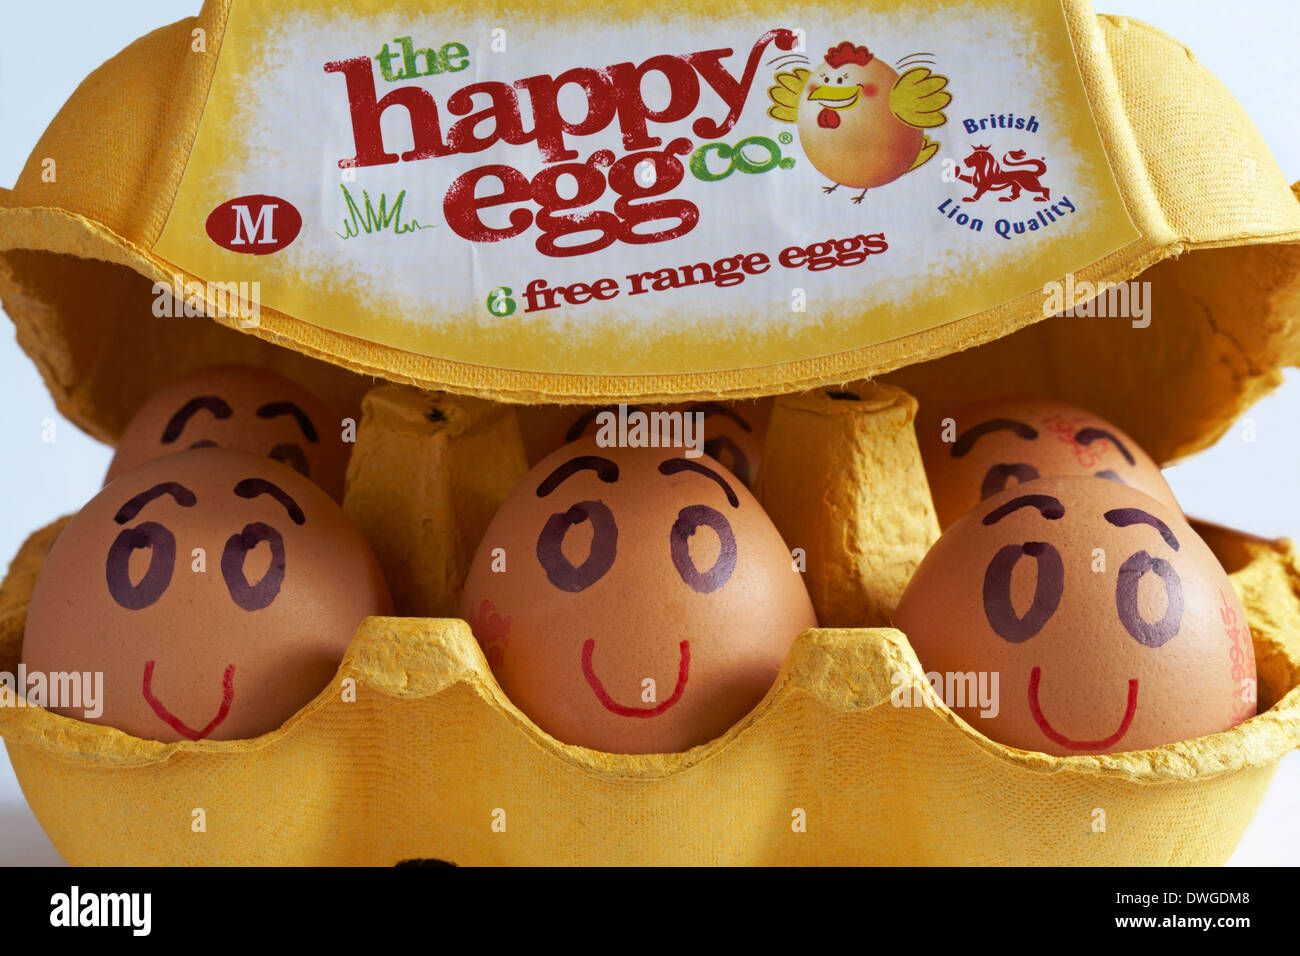 Karton der Happy ei Co6 Eier aus Freilandhaltung British Lion Qualität M mit Deckel öffnen, um Inhalte mit Eiern lächelnd und glücklich zeigen Stockfoto